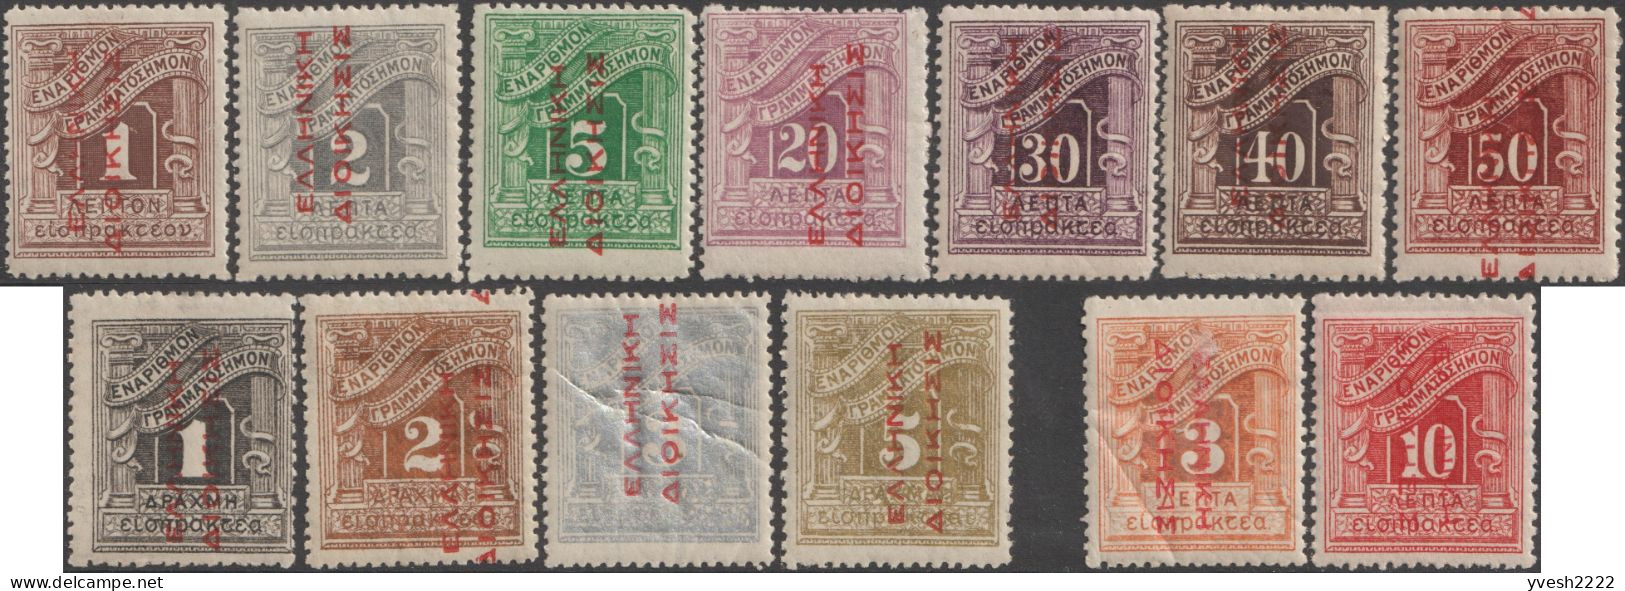 Grèce 1912 Y&T Taxe 52 à 64, Neufs Avec Charnières. Surcharges Rouges - Nuevos